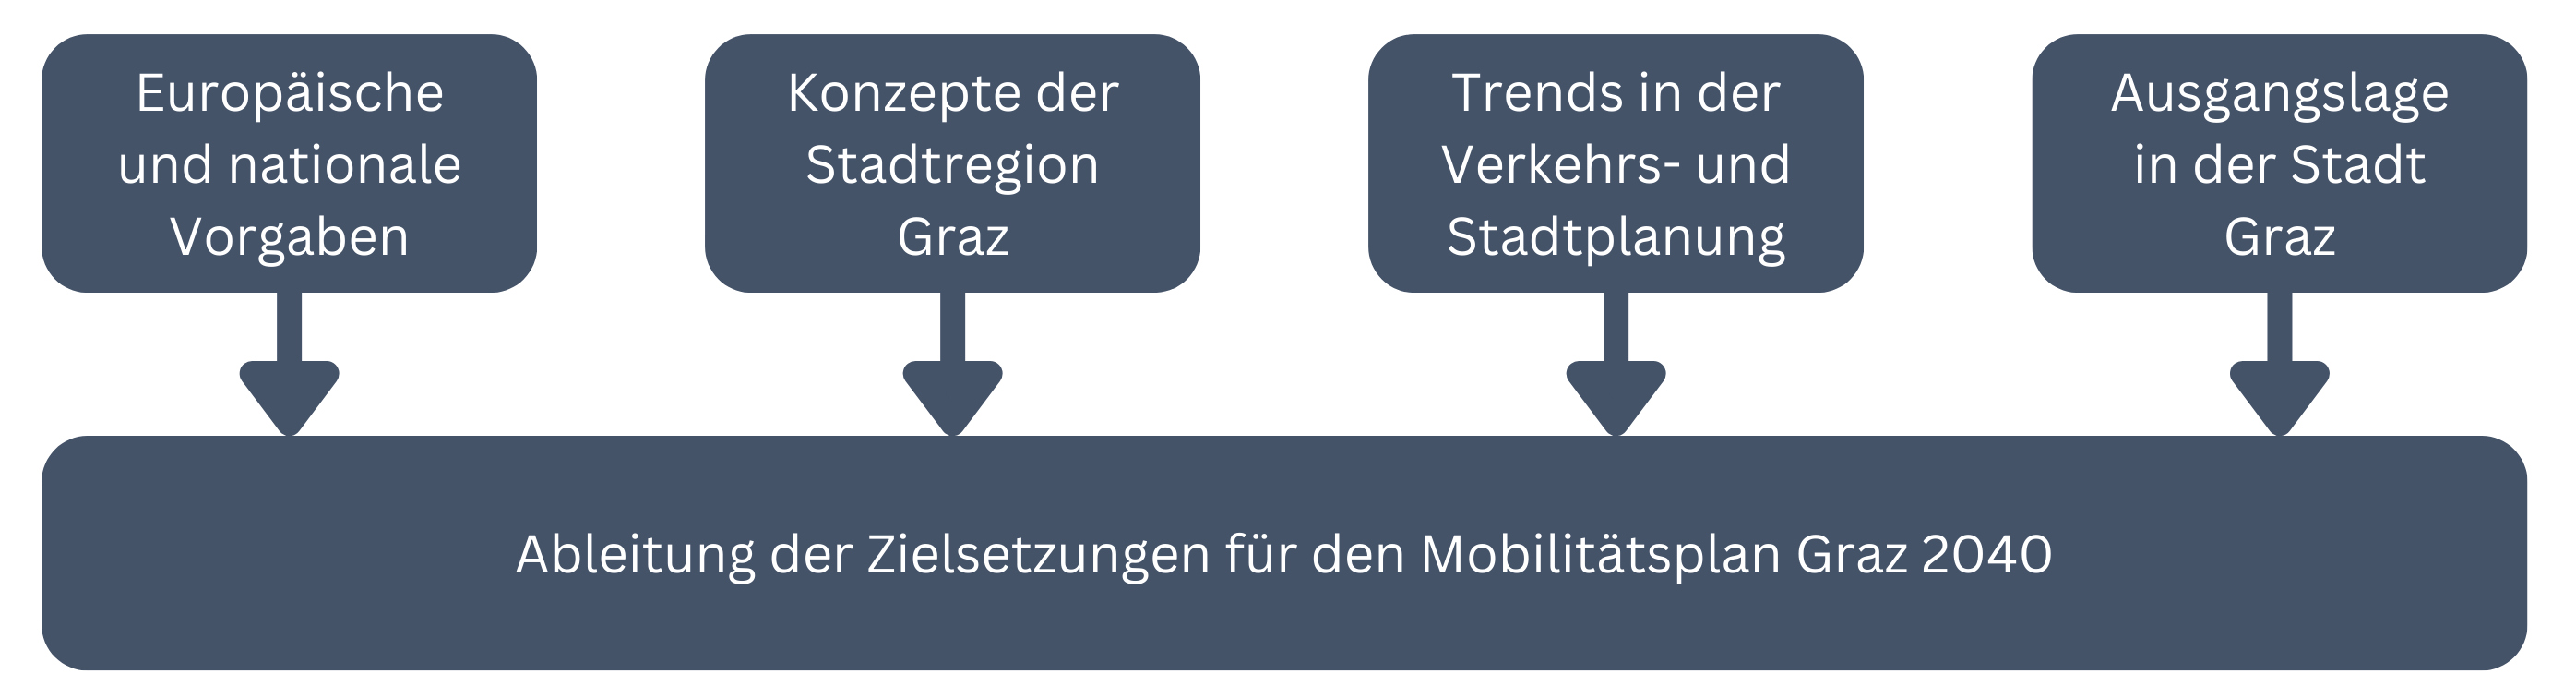 Rahmenbedingungen des Mobilitätsplan Graz 2040